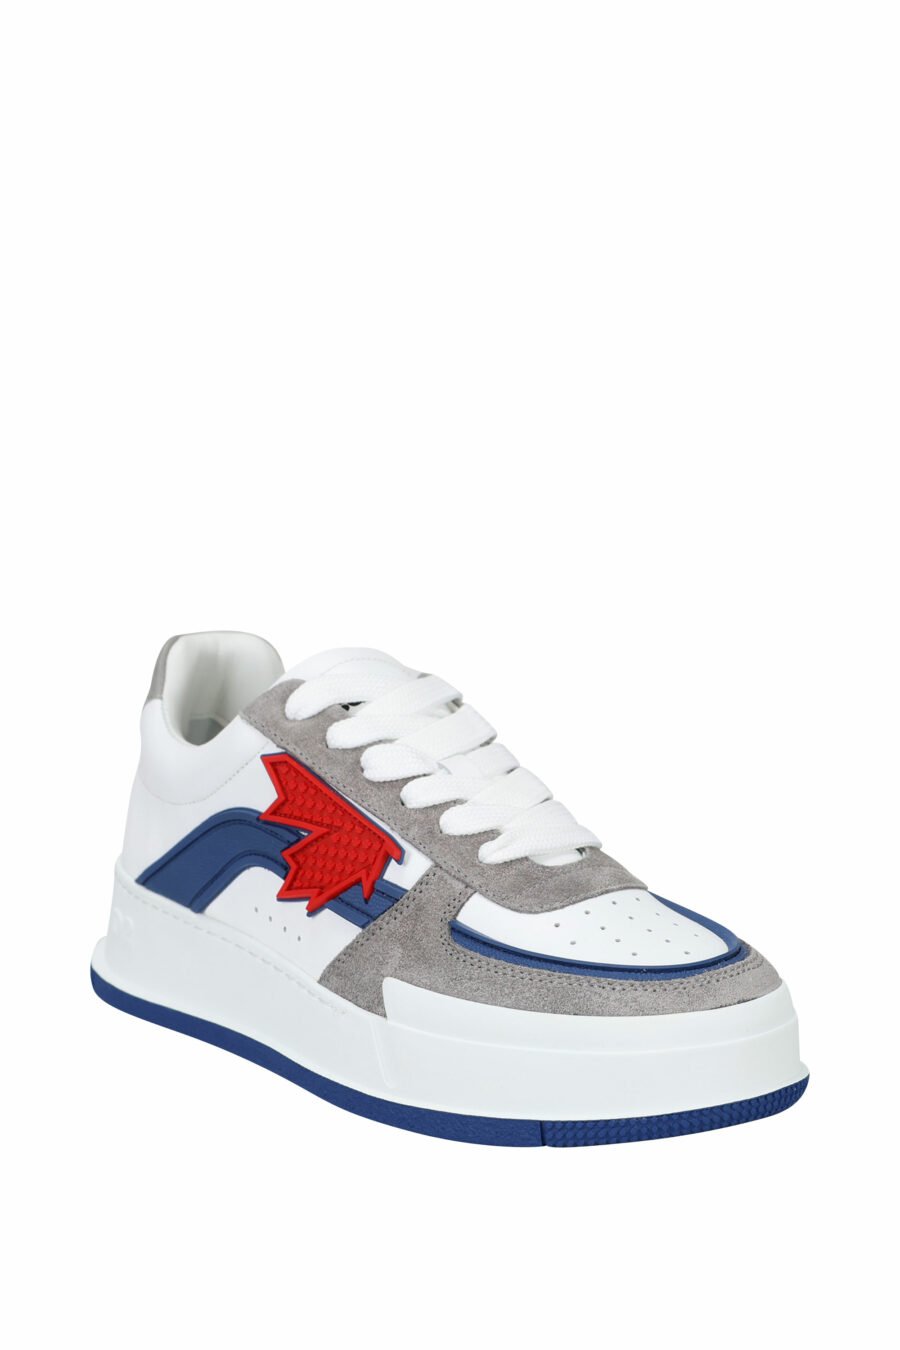 Zapatillas blancas mix con gris, azul y logo hoja roja - 8055777242216 1